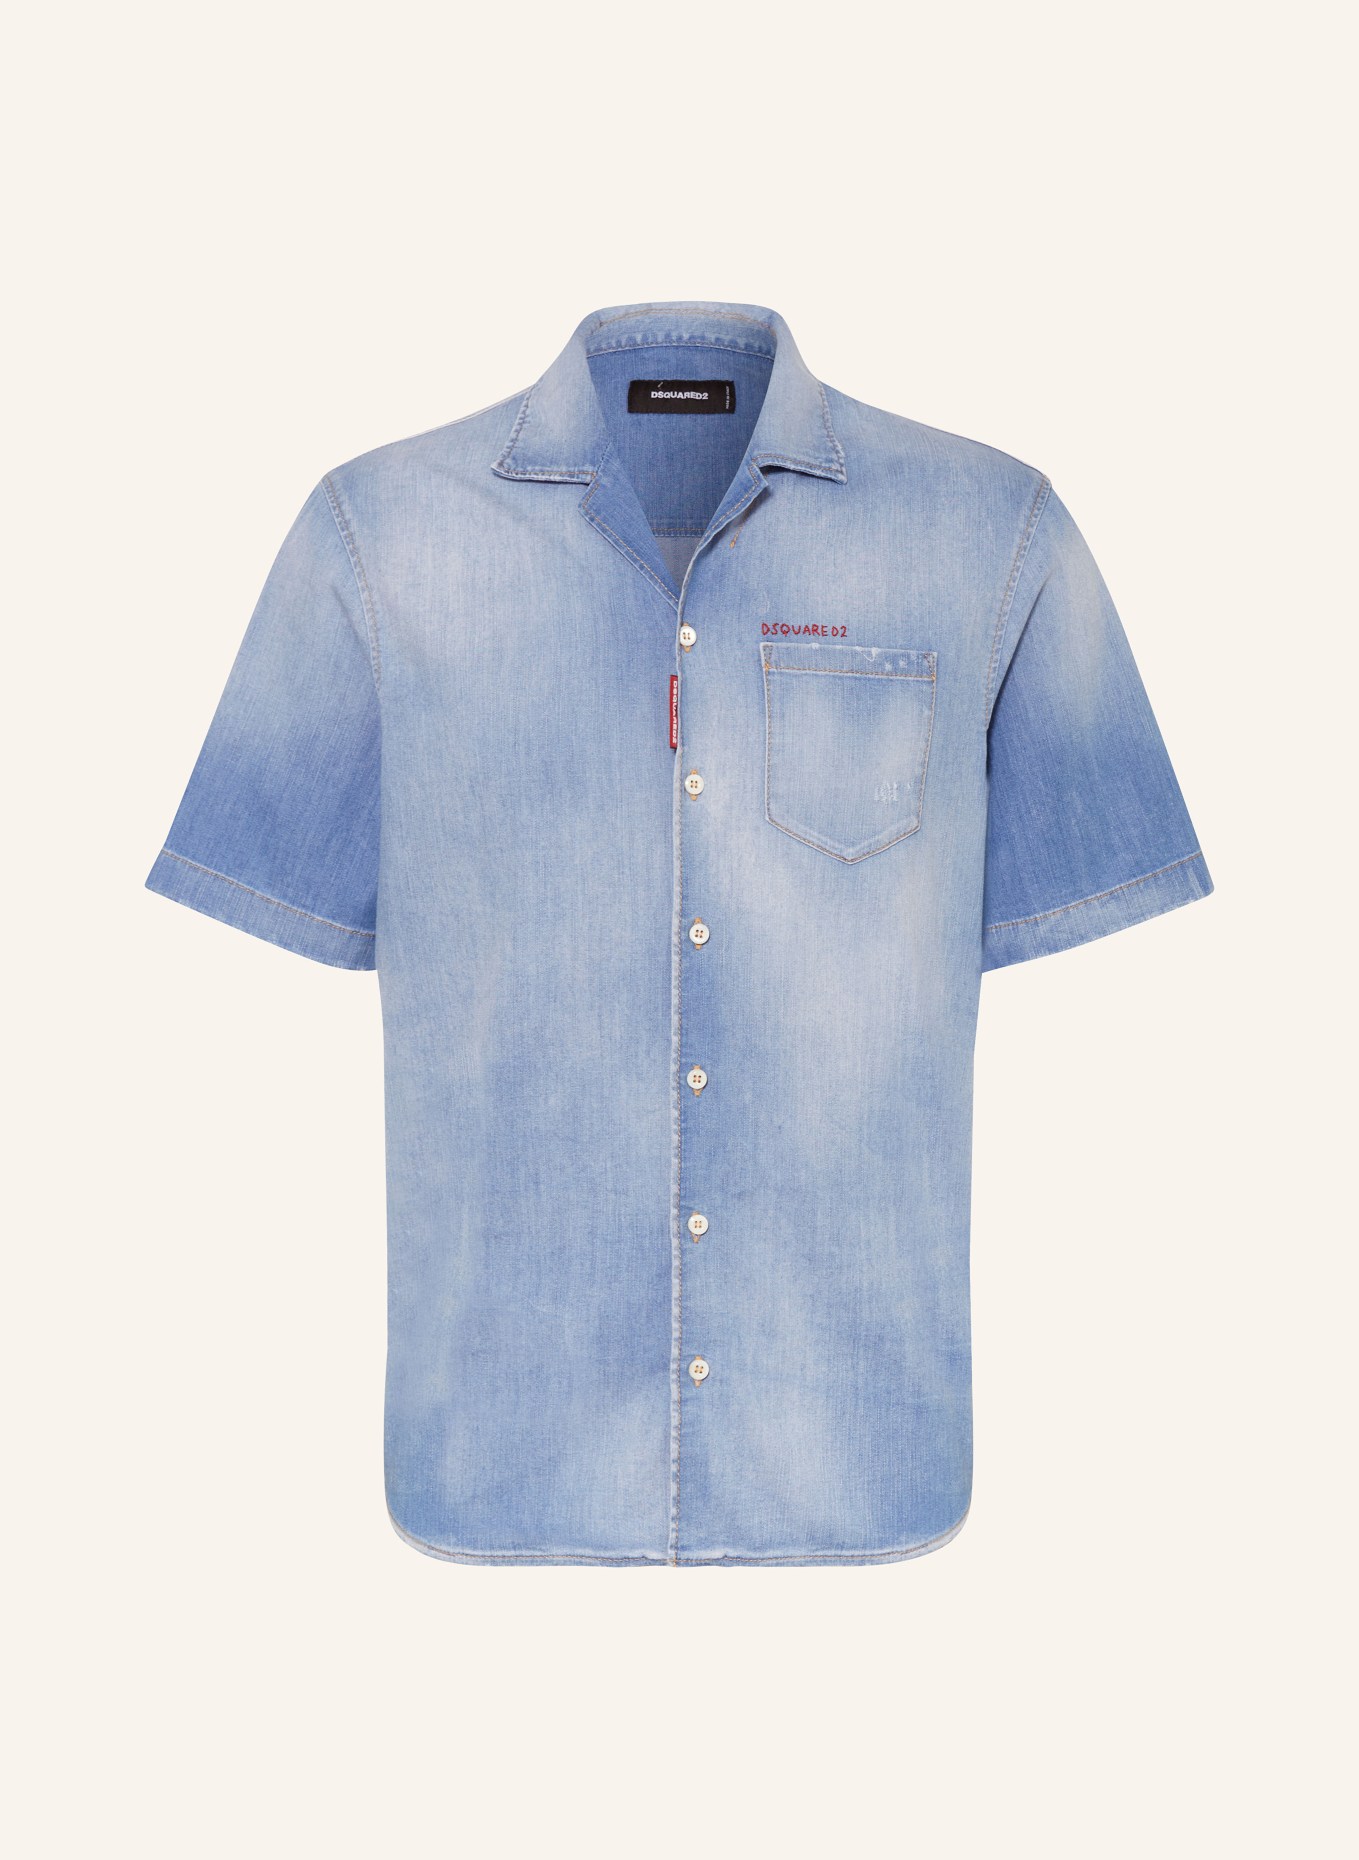 DSQUARED2 Resort shirt comfort fit in denim, Color: BLUE (Image 1)